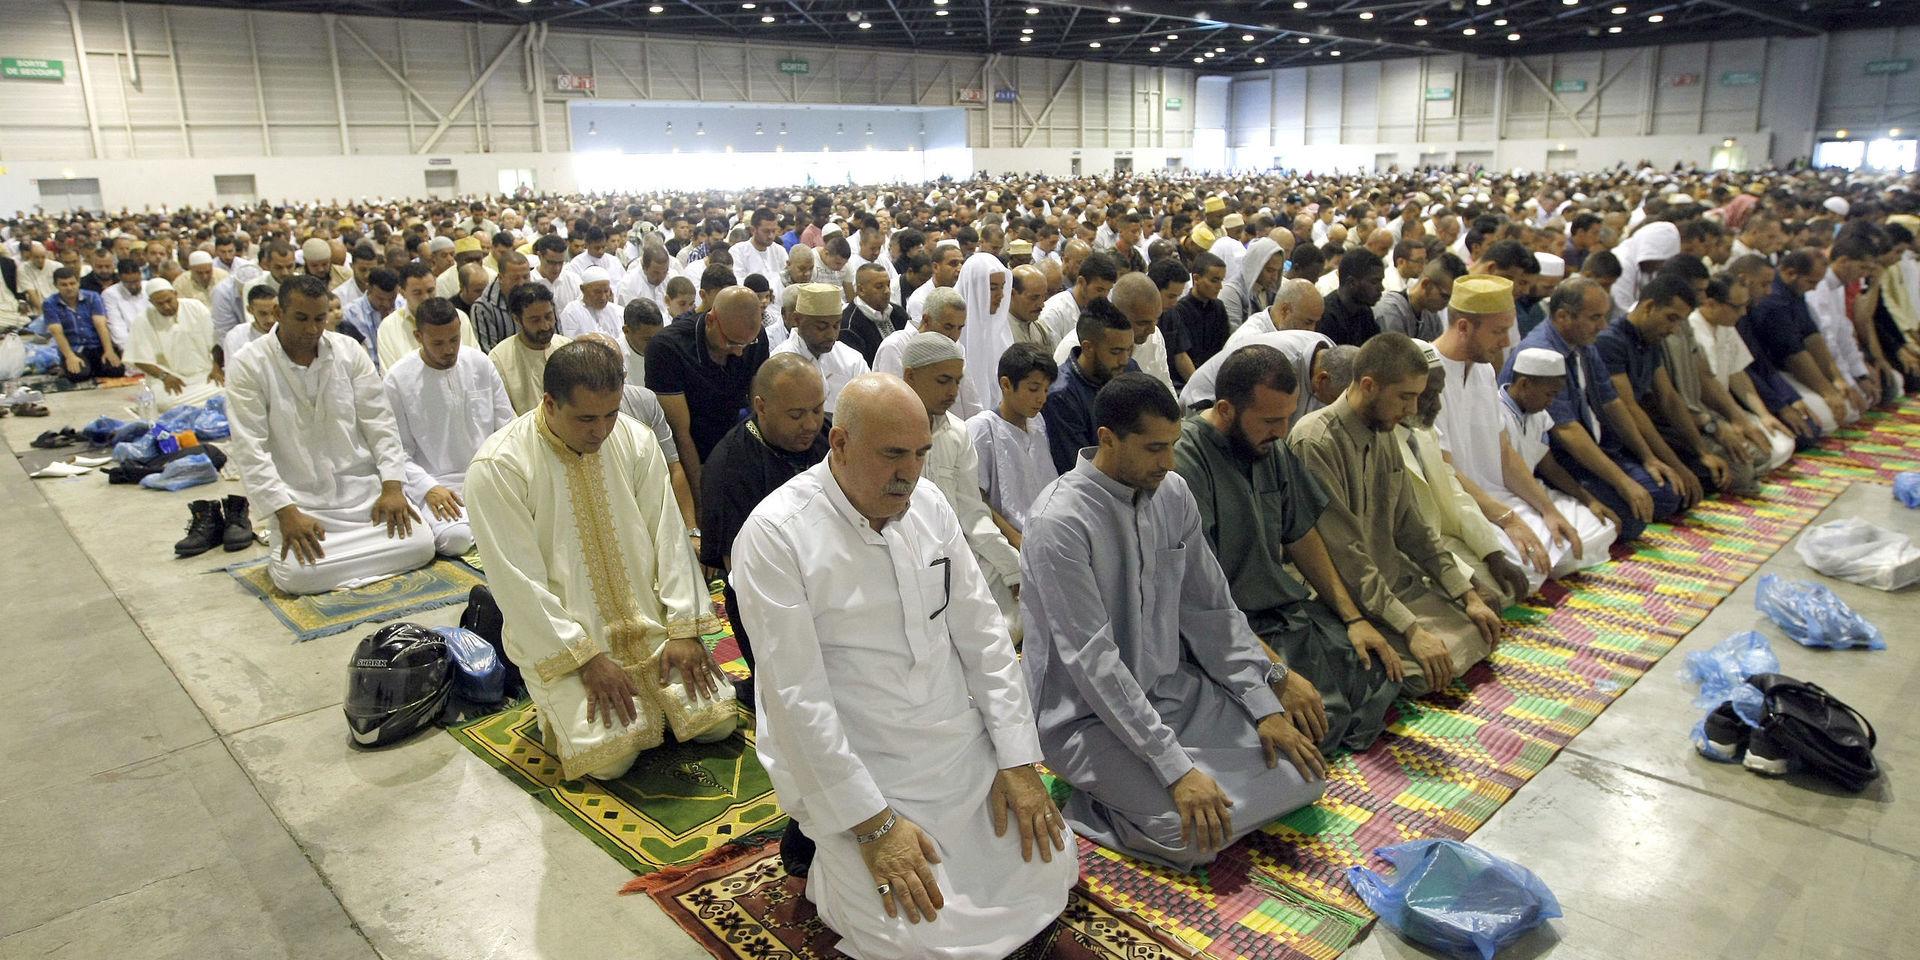 Frankrike lättar på reglerna för religiösa sammankomster. Bilden tagen i samband med id al-fitr 2014 i Marseille. 